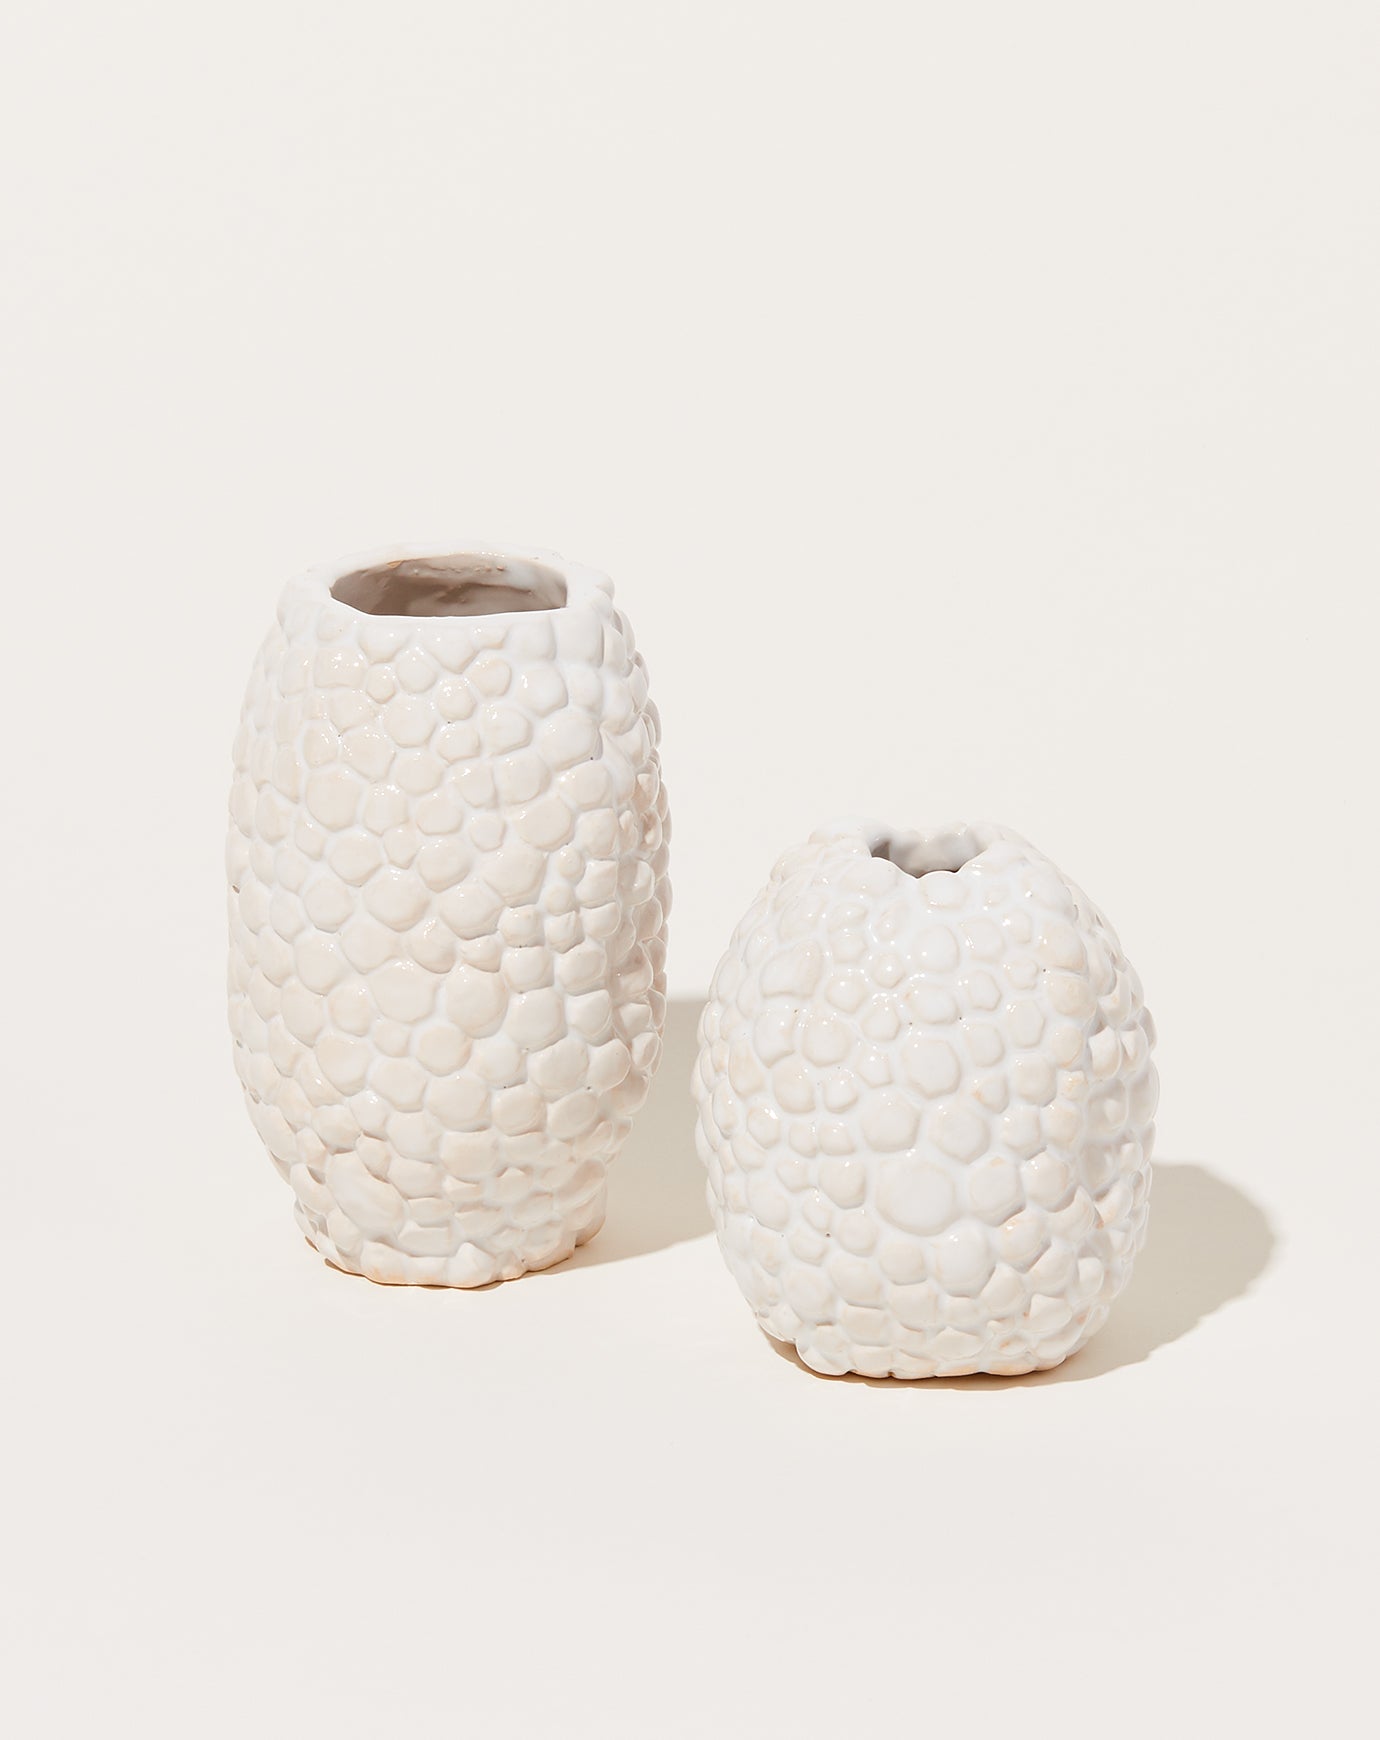 Isabel Halley Oval Bumpy Vase